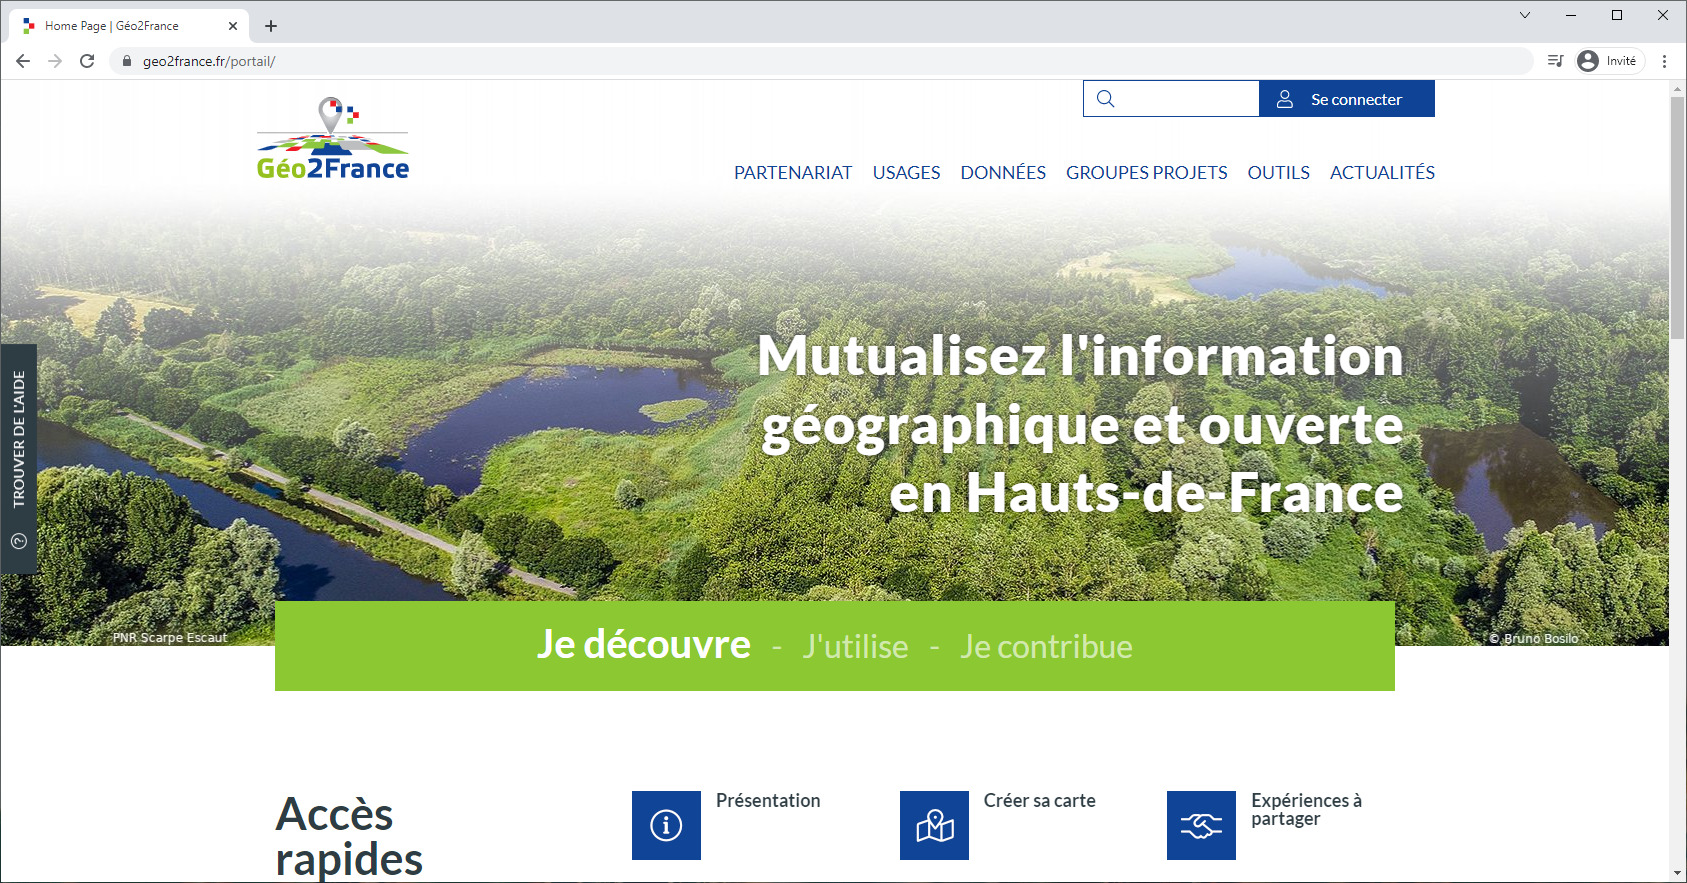 Interface web Haut de France (France)